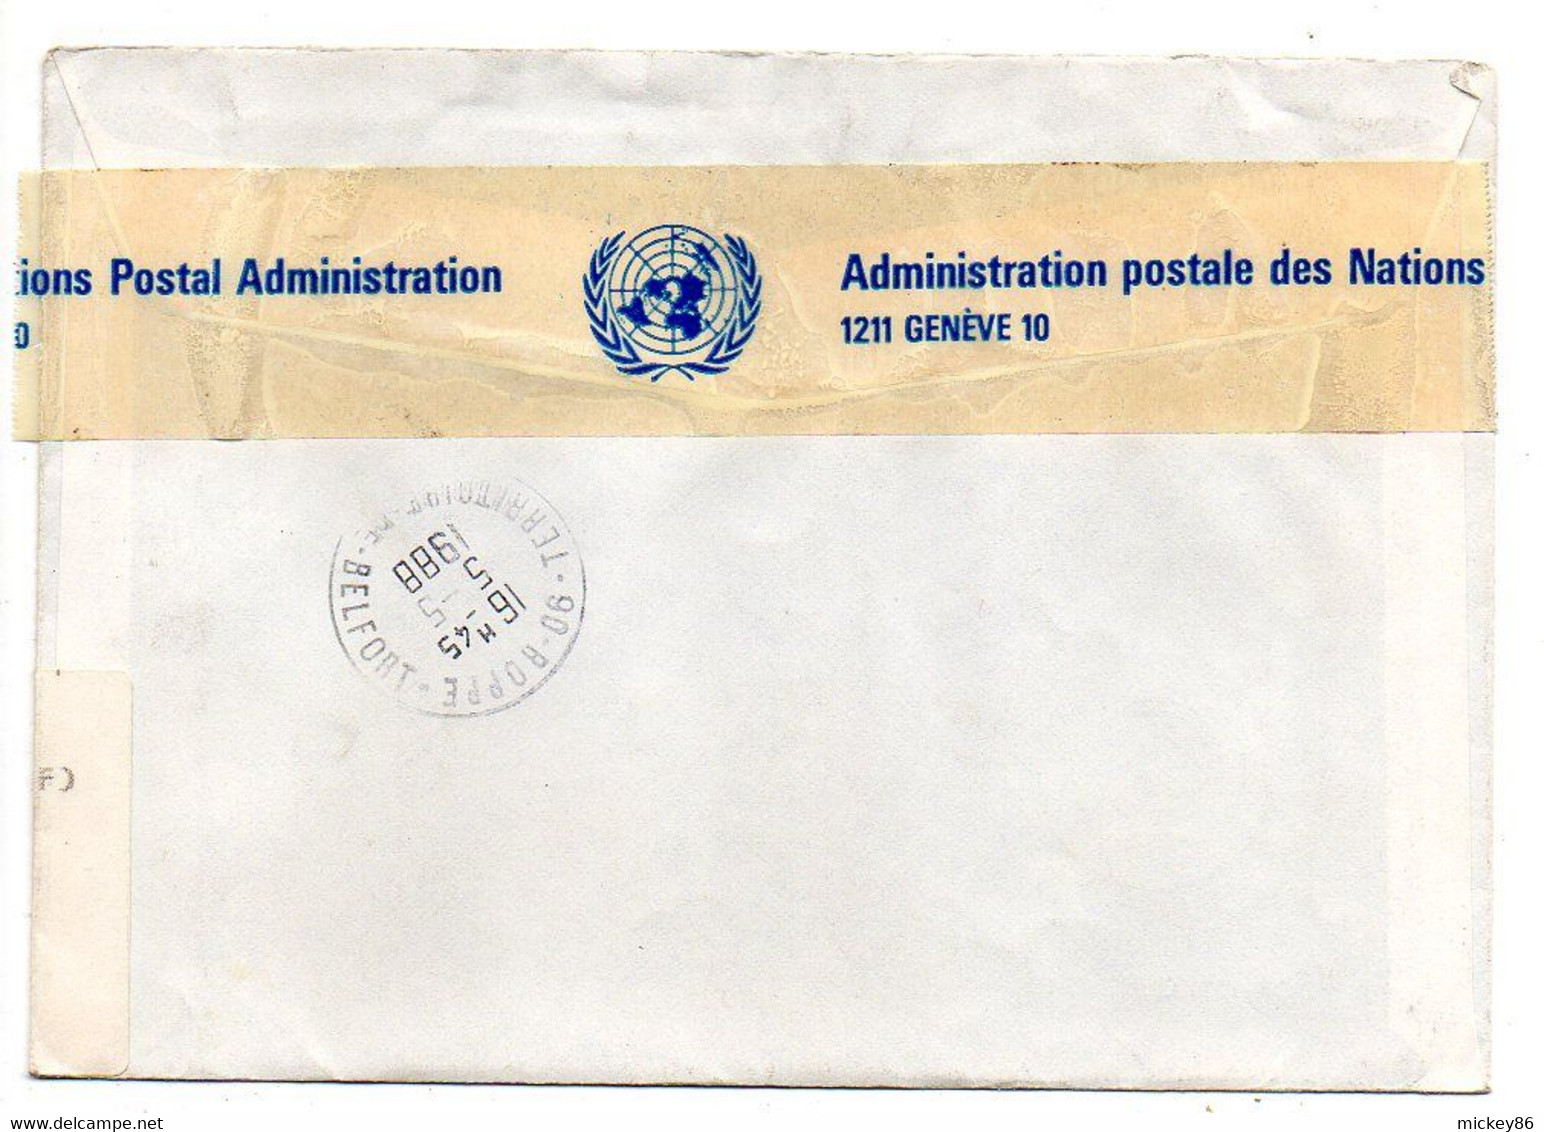 ONU--Nations Unies Genève --1988--Lettre Recommandée Pour ROPPE-90 (France)..composition De Timbres - ONU